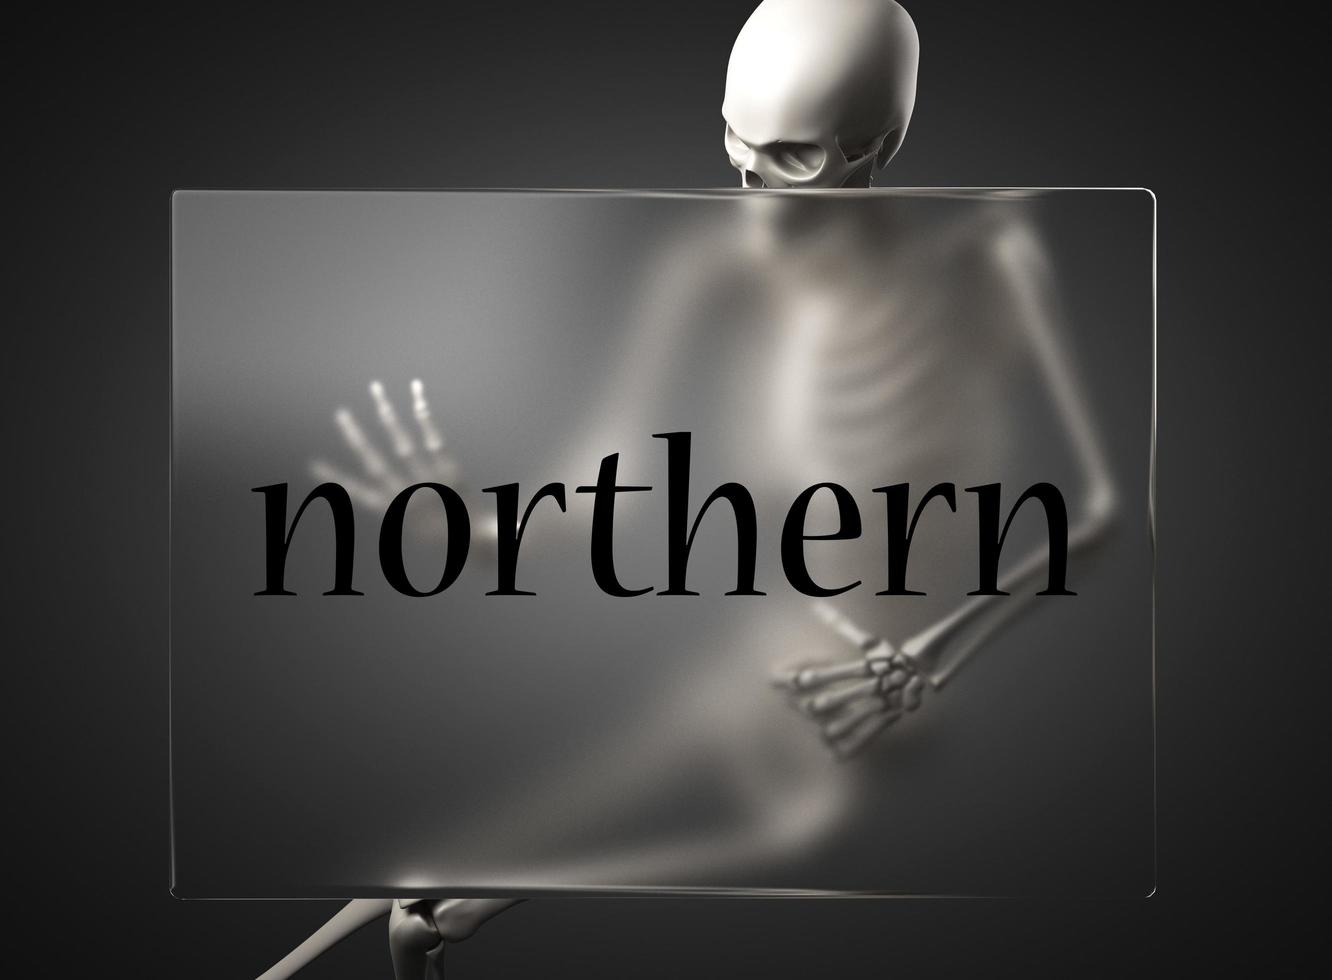 palabra del norte sobre vidrio y esqueleto foto